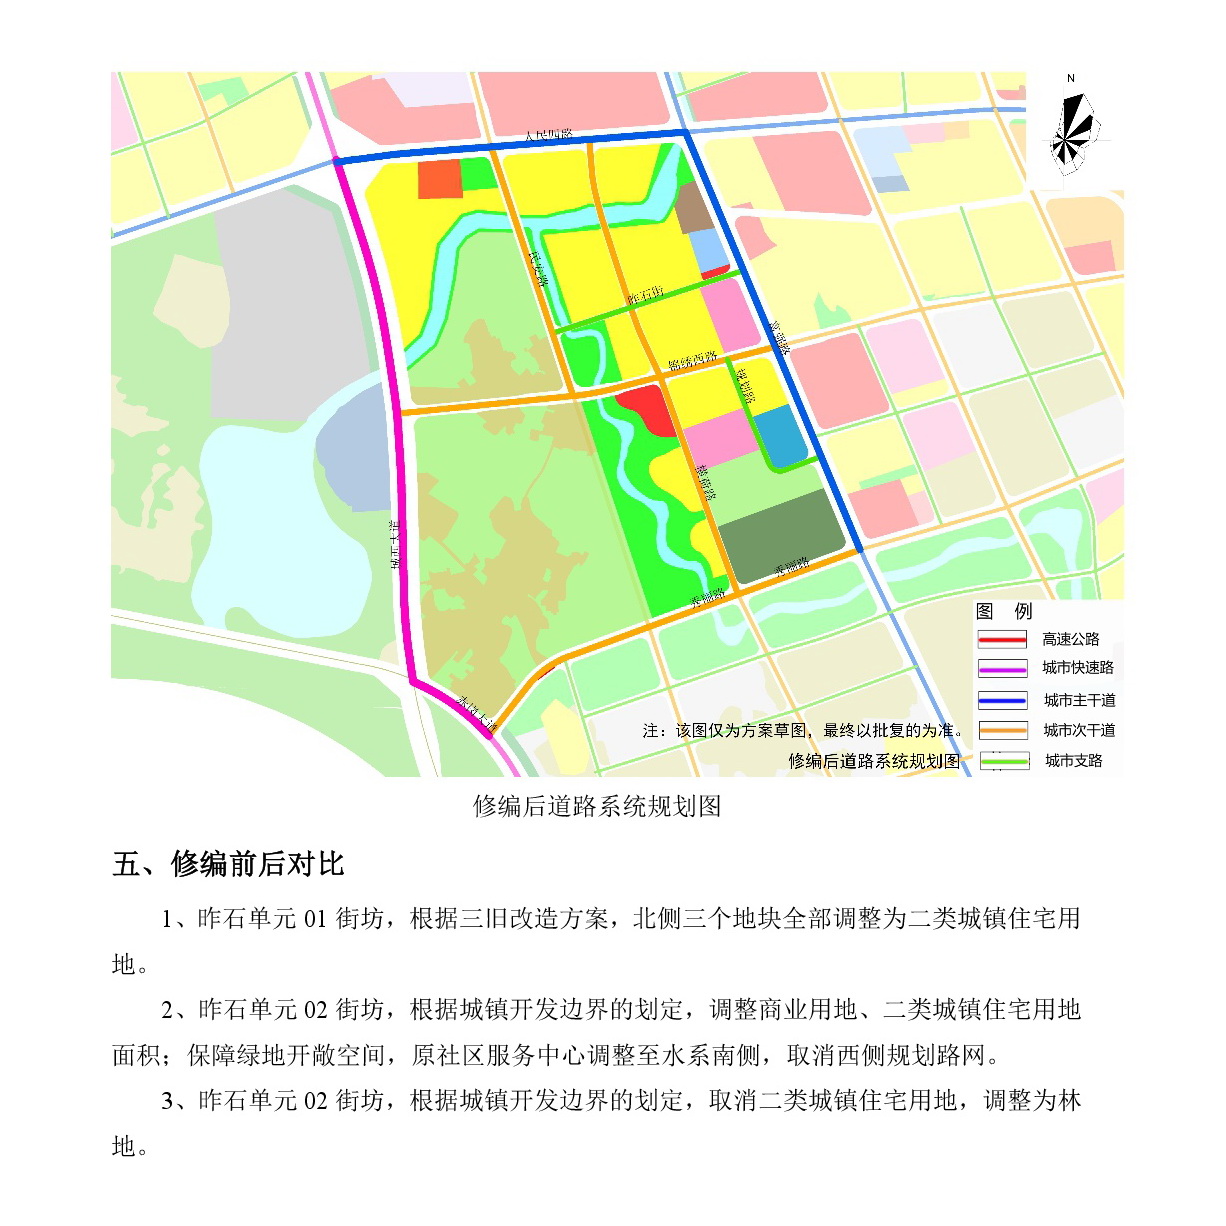 《清远中心城区重点片区城市设计及控制性详细规划（昨石单元控规修编）》草案公示-005.jpg